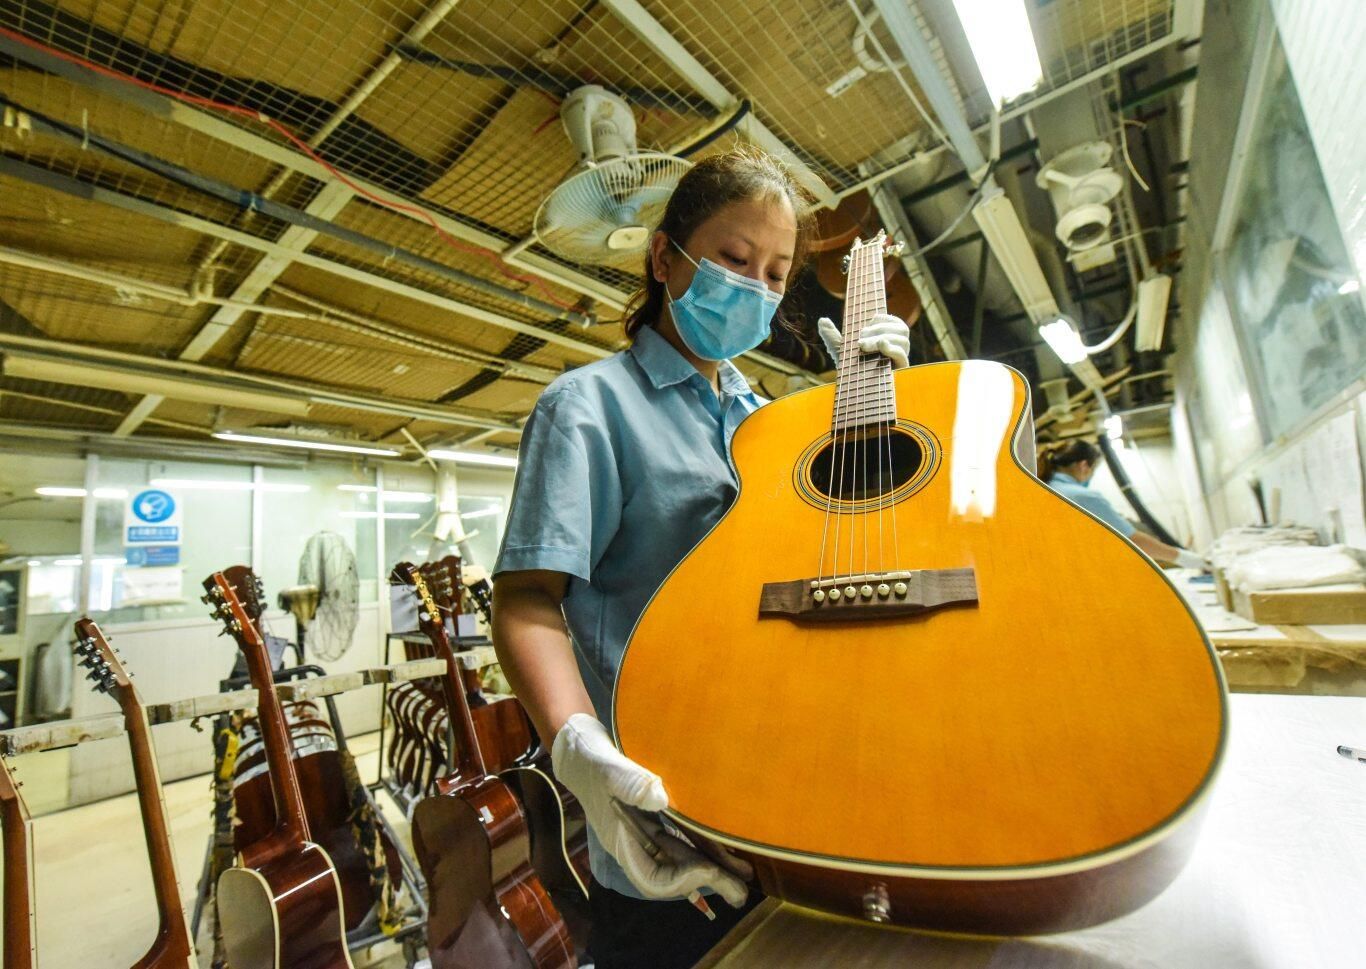 经过三十余年的耕耘，惠阳已全国最大的吉他生产基地。图为吉他企业工人正在制作吉他